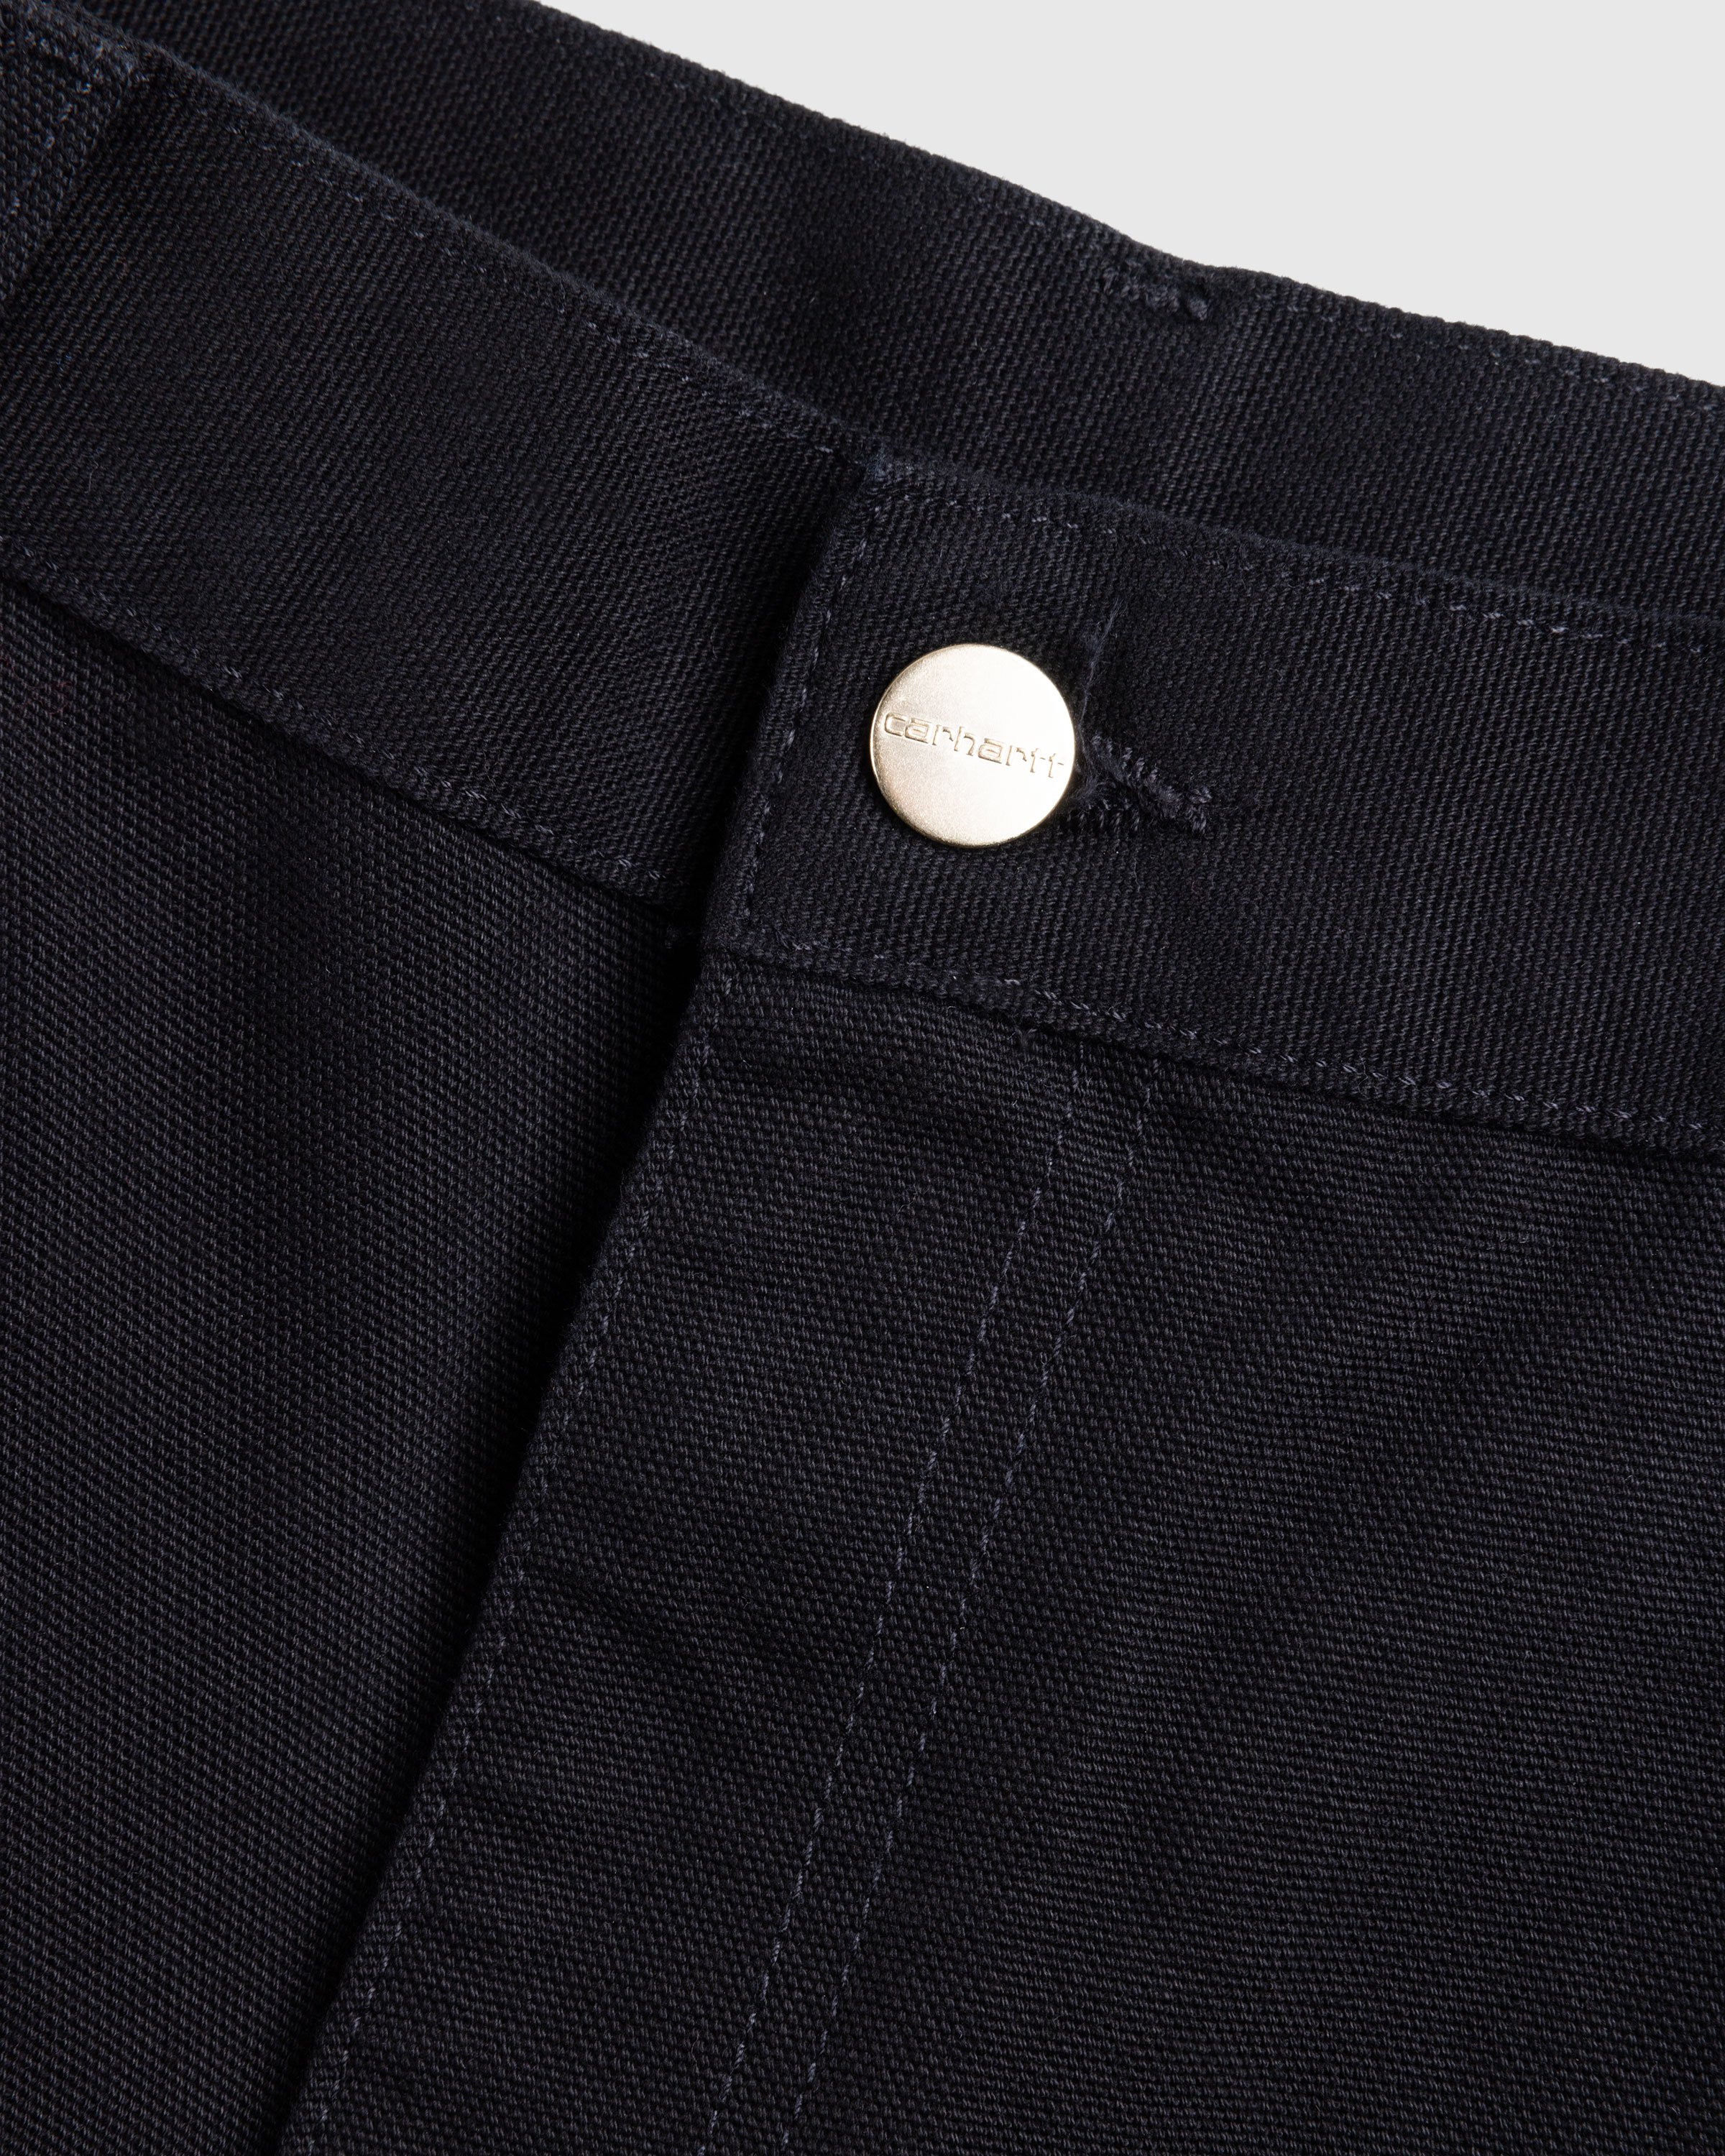 Carhartt WIP - Single Knee Pant Black /rinsed - Clothing - Black - Image 7